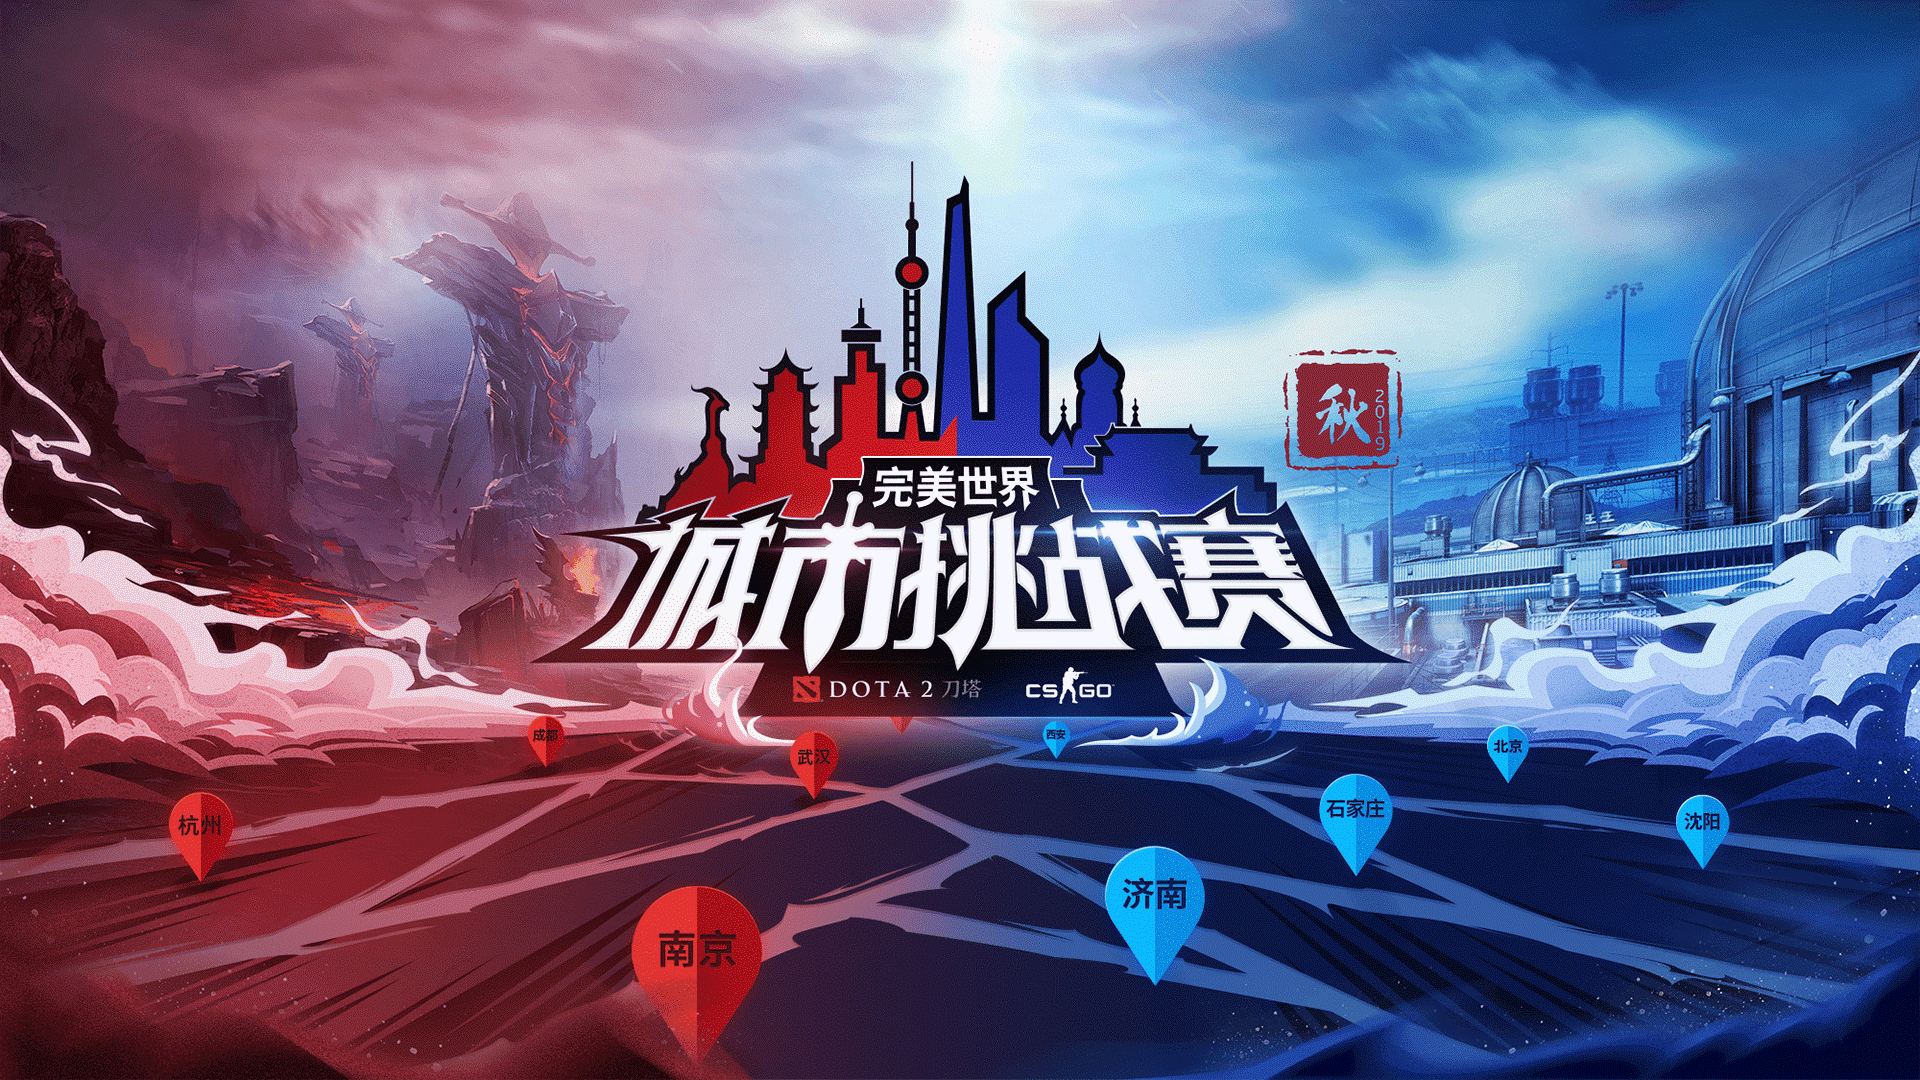 城市挑战赛（秋季赛）DOTA2本周六首周合肥、天津、南京开战